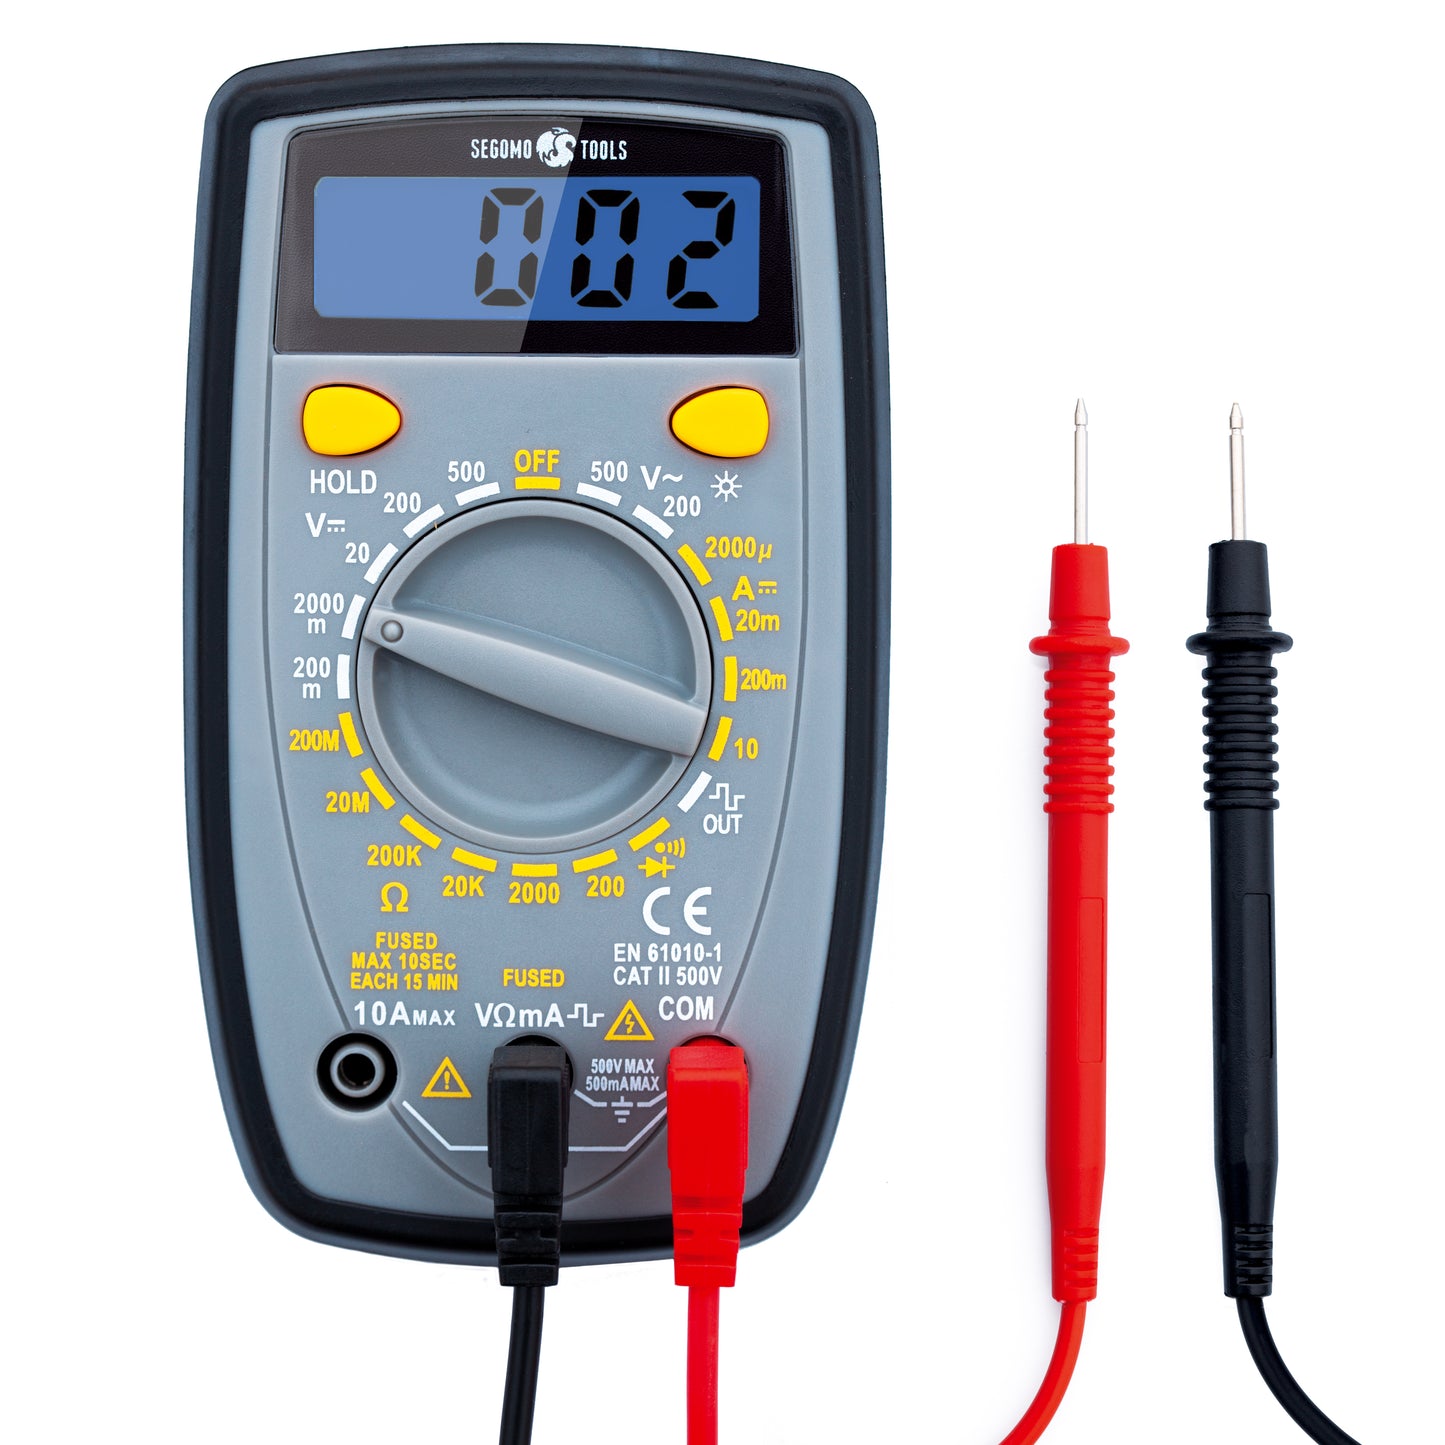 Segomo Tools 500 Volt Amp & Diode Voltage, Resistance & Continuity Digital Multimeter Tester - DM500